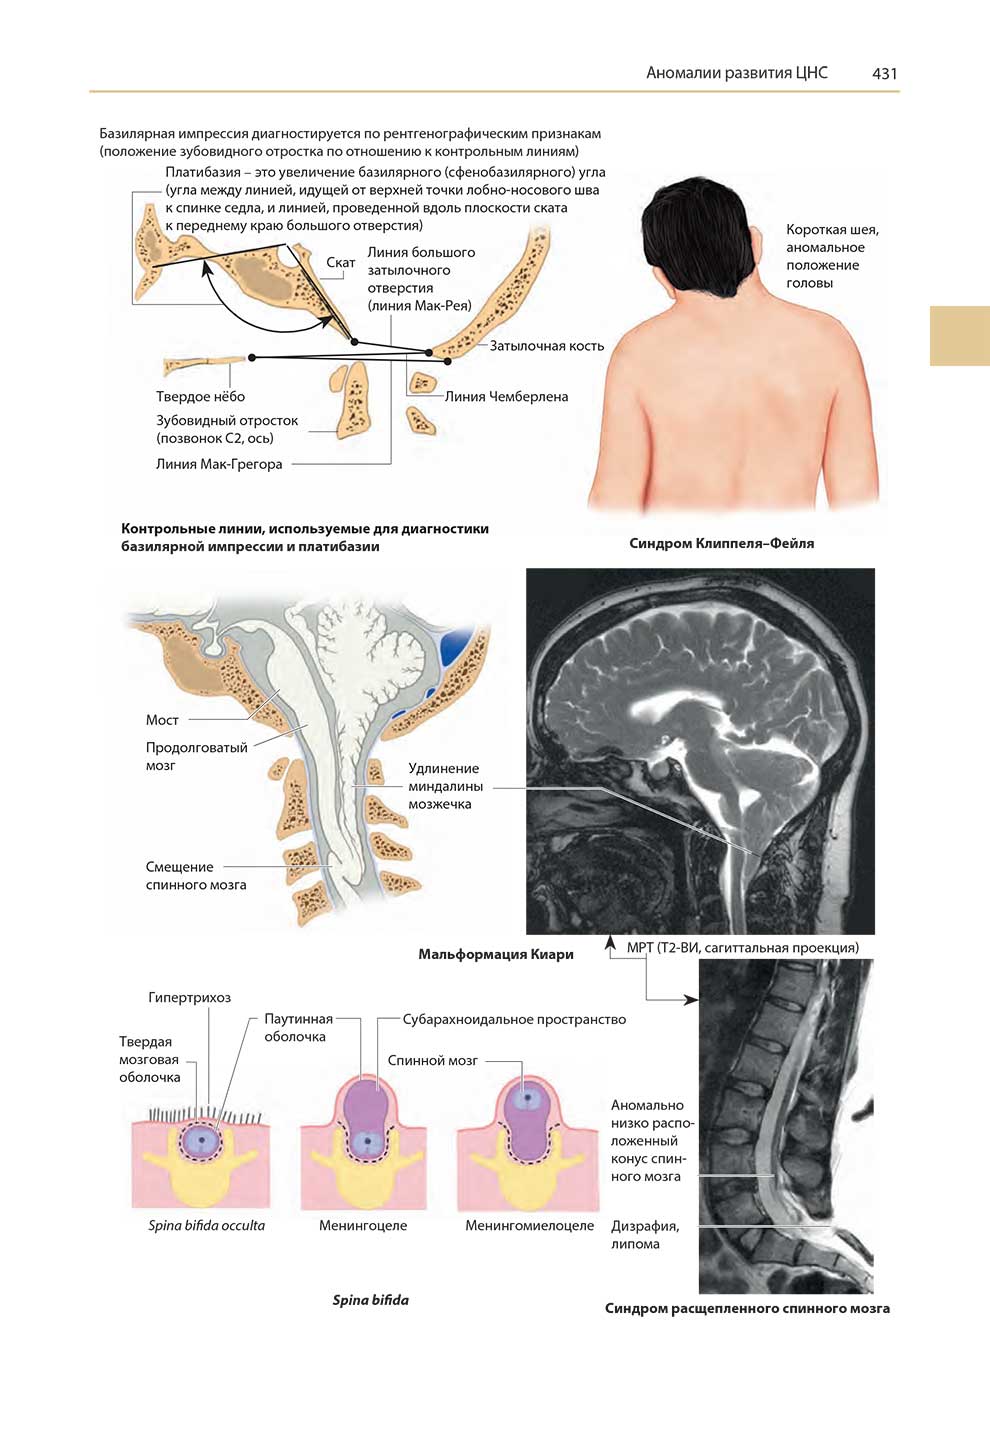 Синдром расщепленного спинного мозга